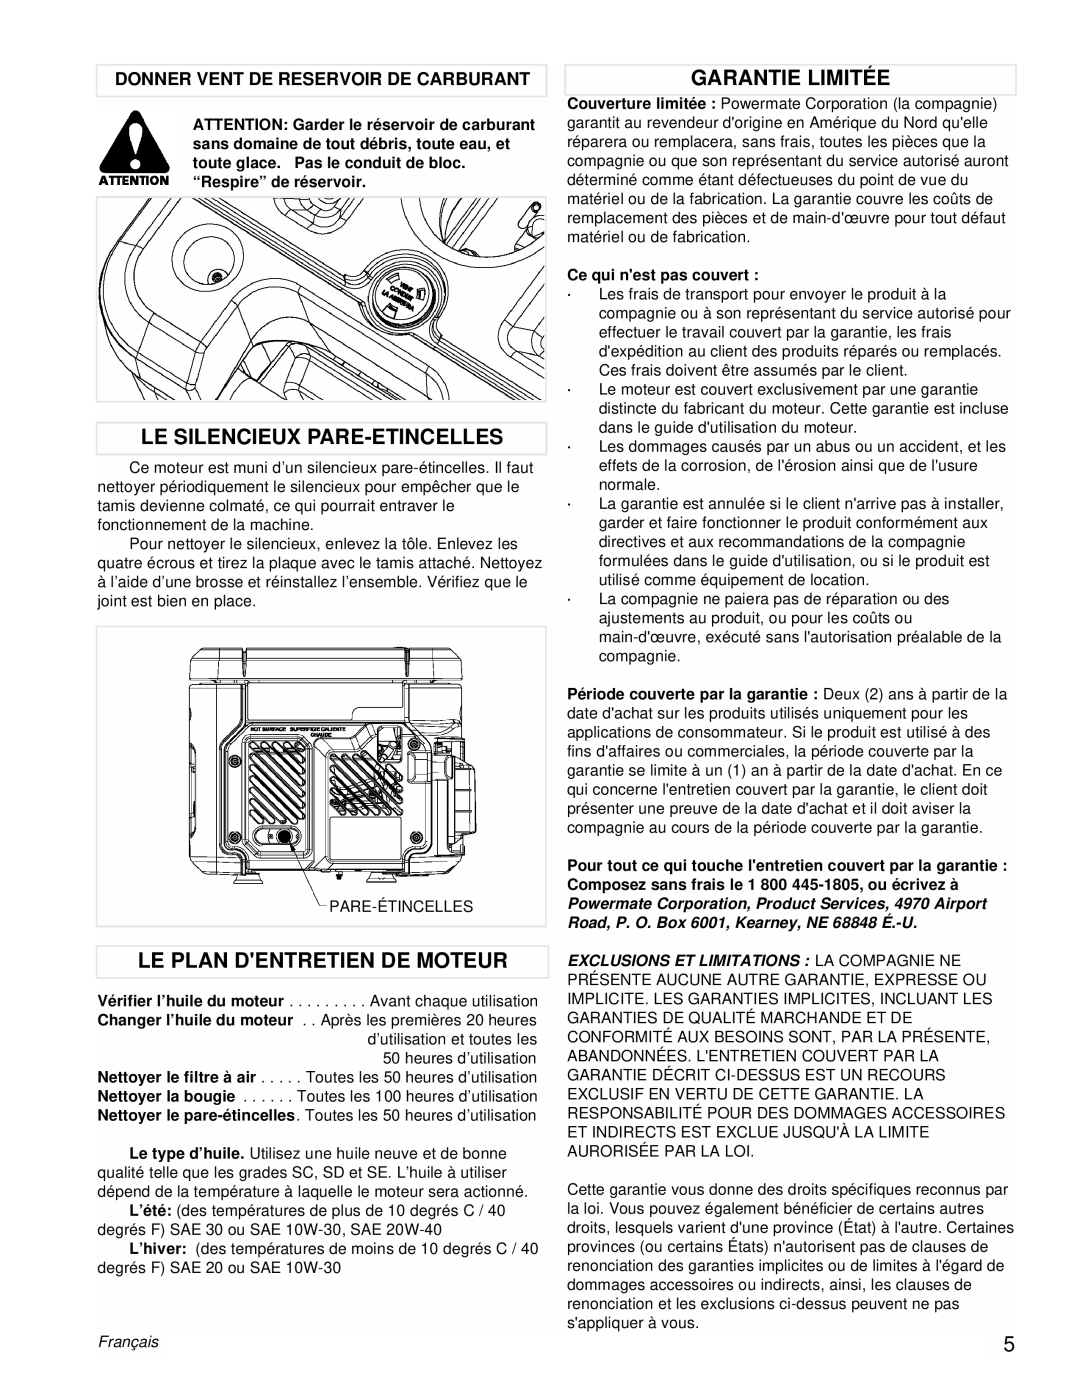 Powermate PM0431800.01 manual Le Silencieux Pare-Etincelles, Le Plan Dentretien De Moteur, Garantie Limitée, Français 